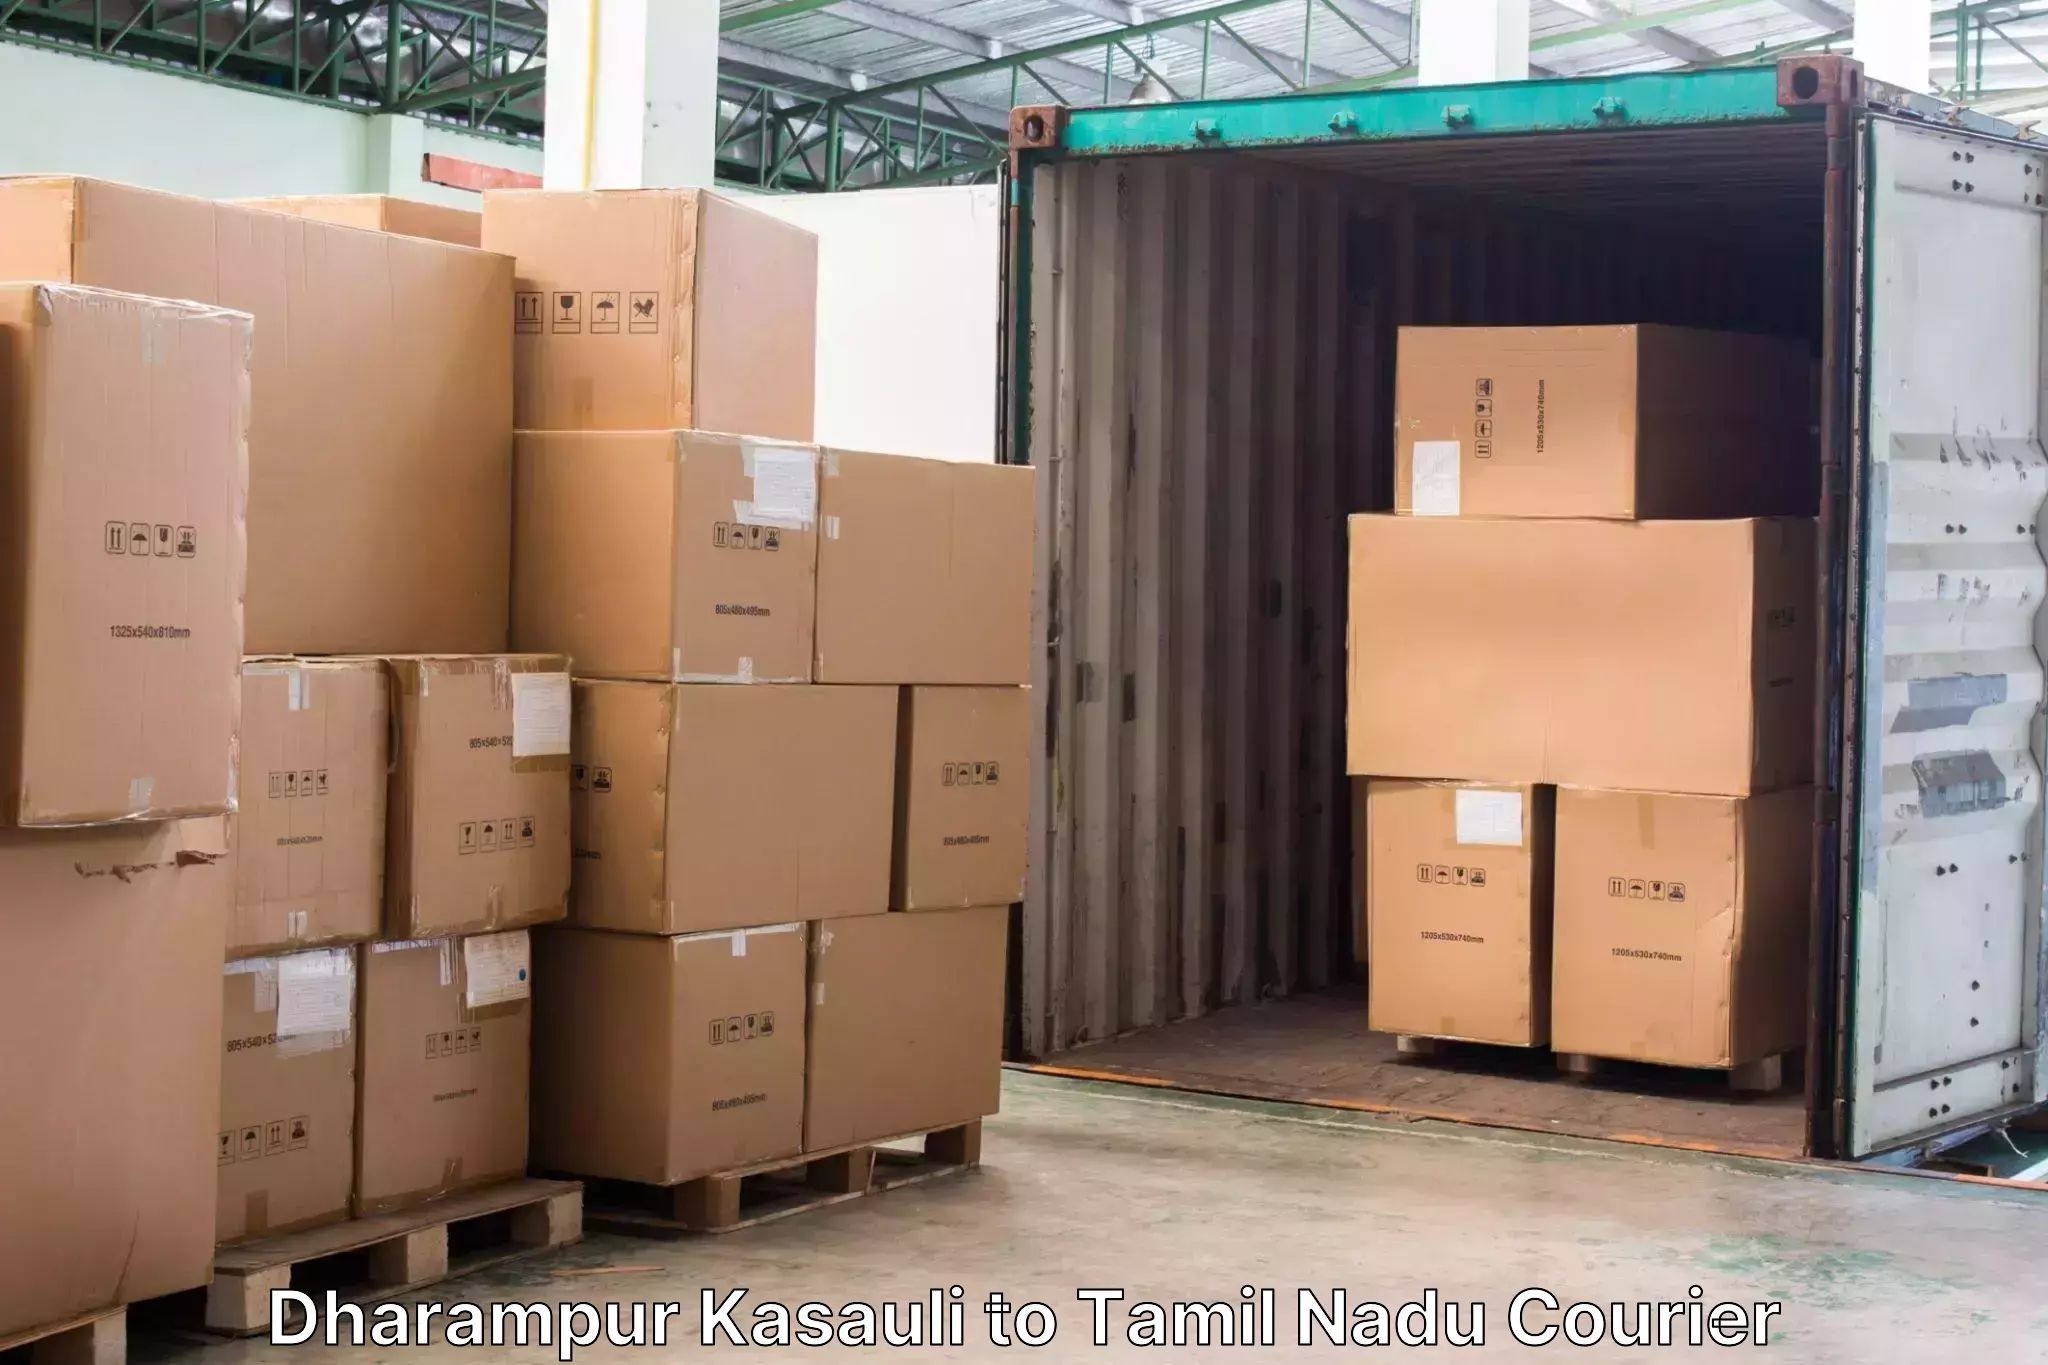 Luggage forwarding service Dharampur Kasauli to Viralimalai